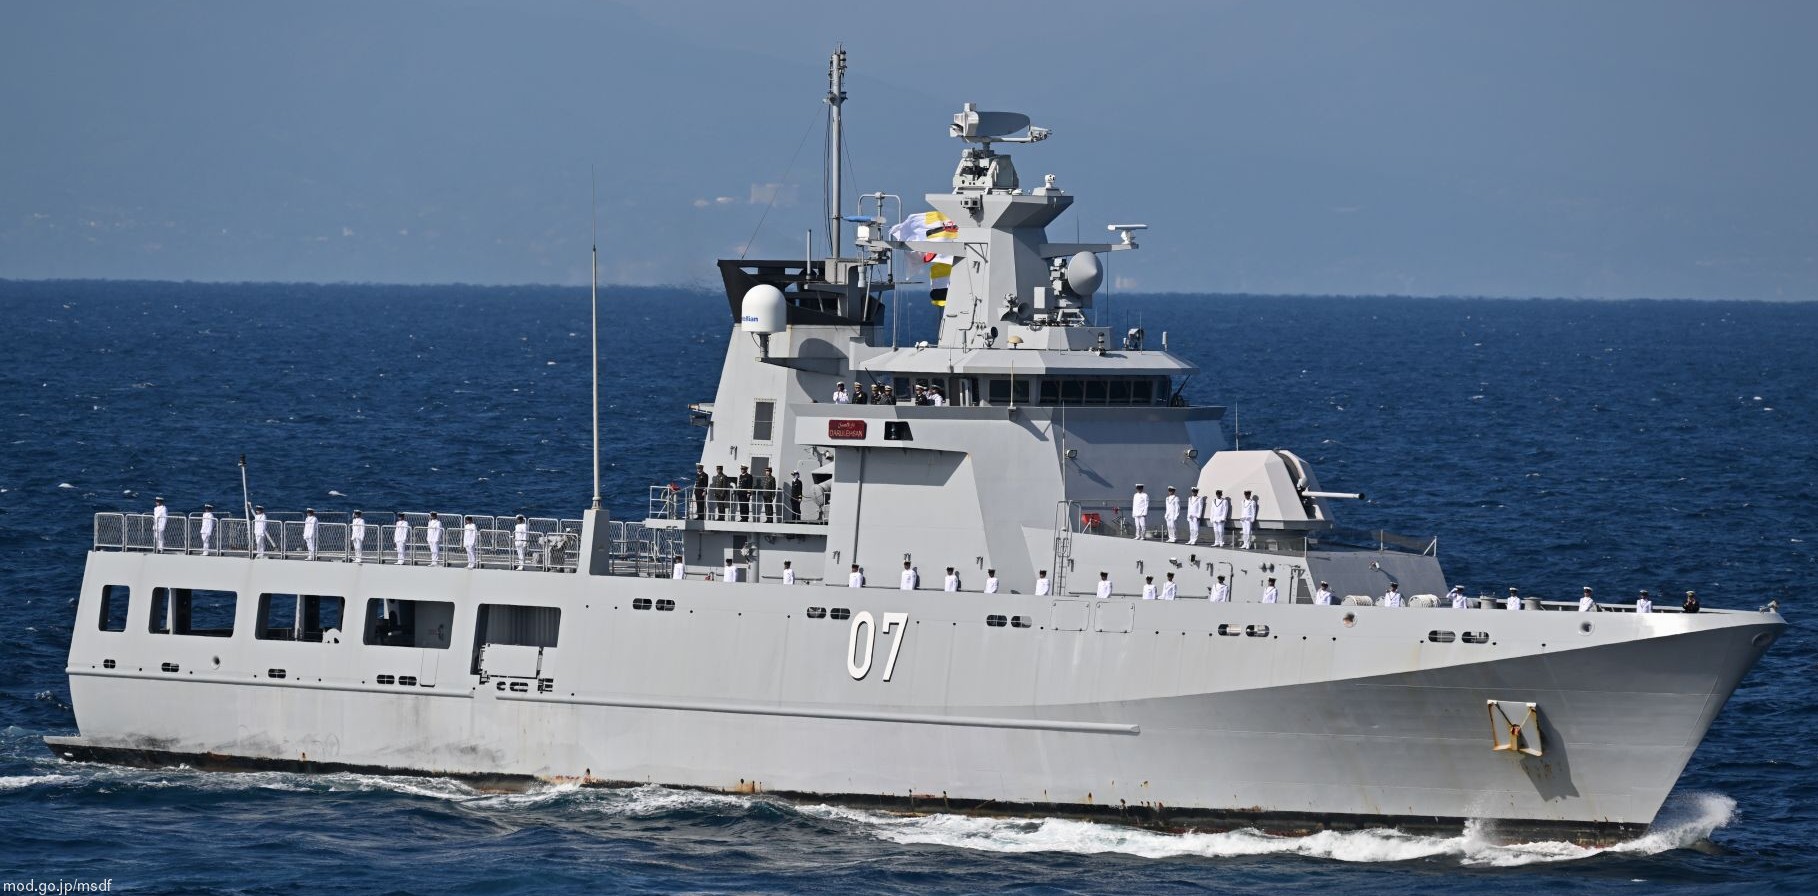 opv 07 kdb darulehsan offshore patrol vessel darussalem class royal brunei navy 09